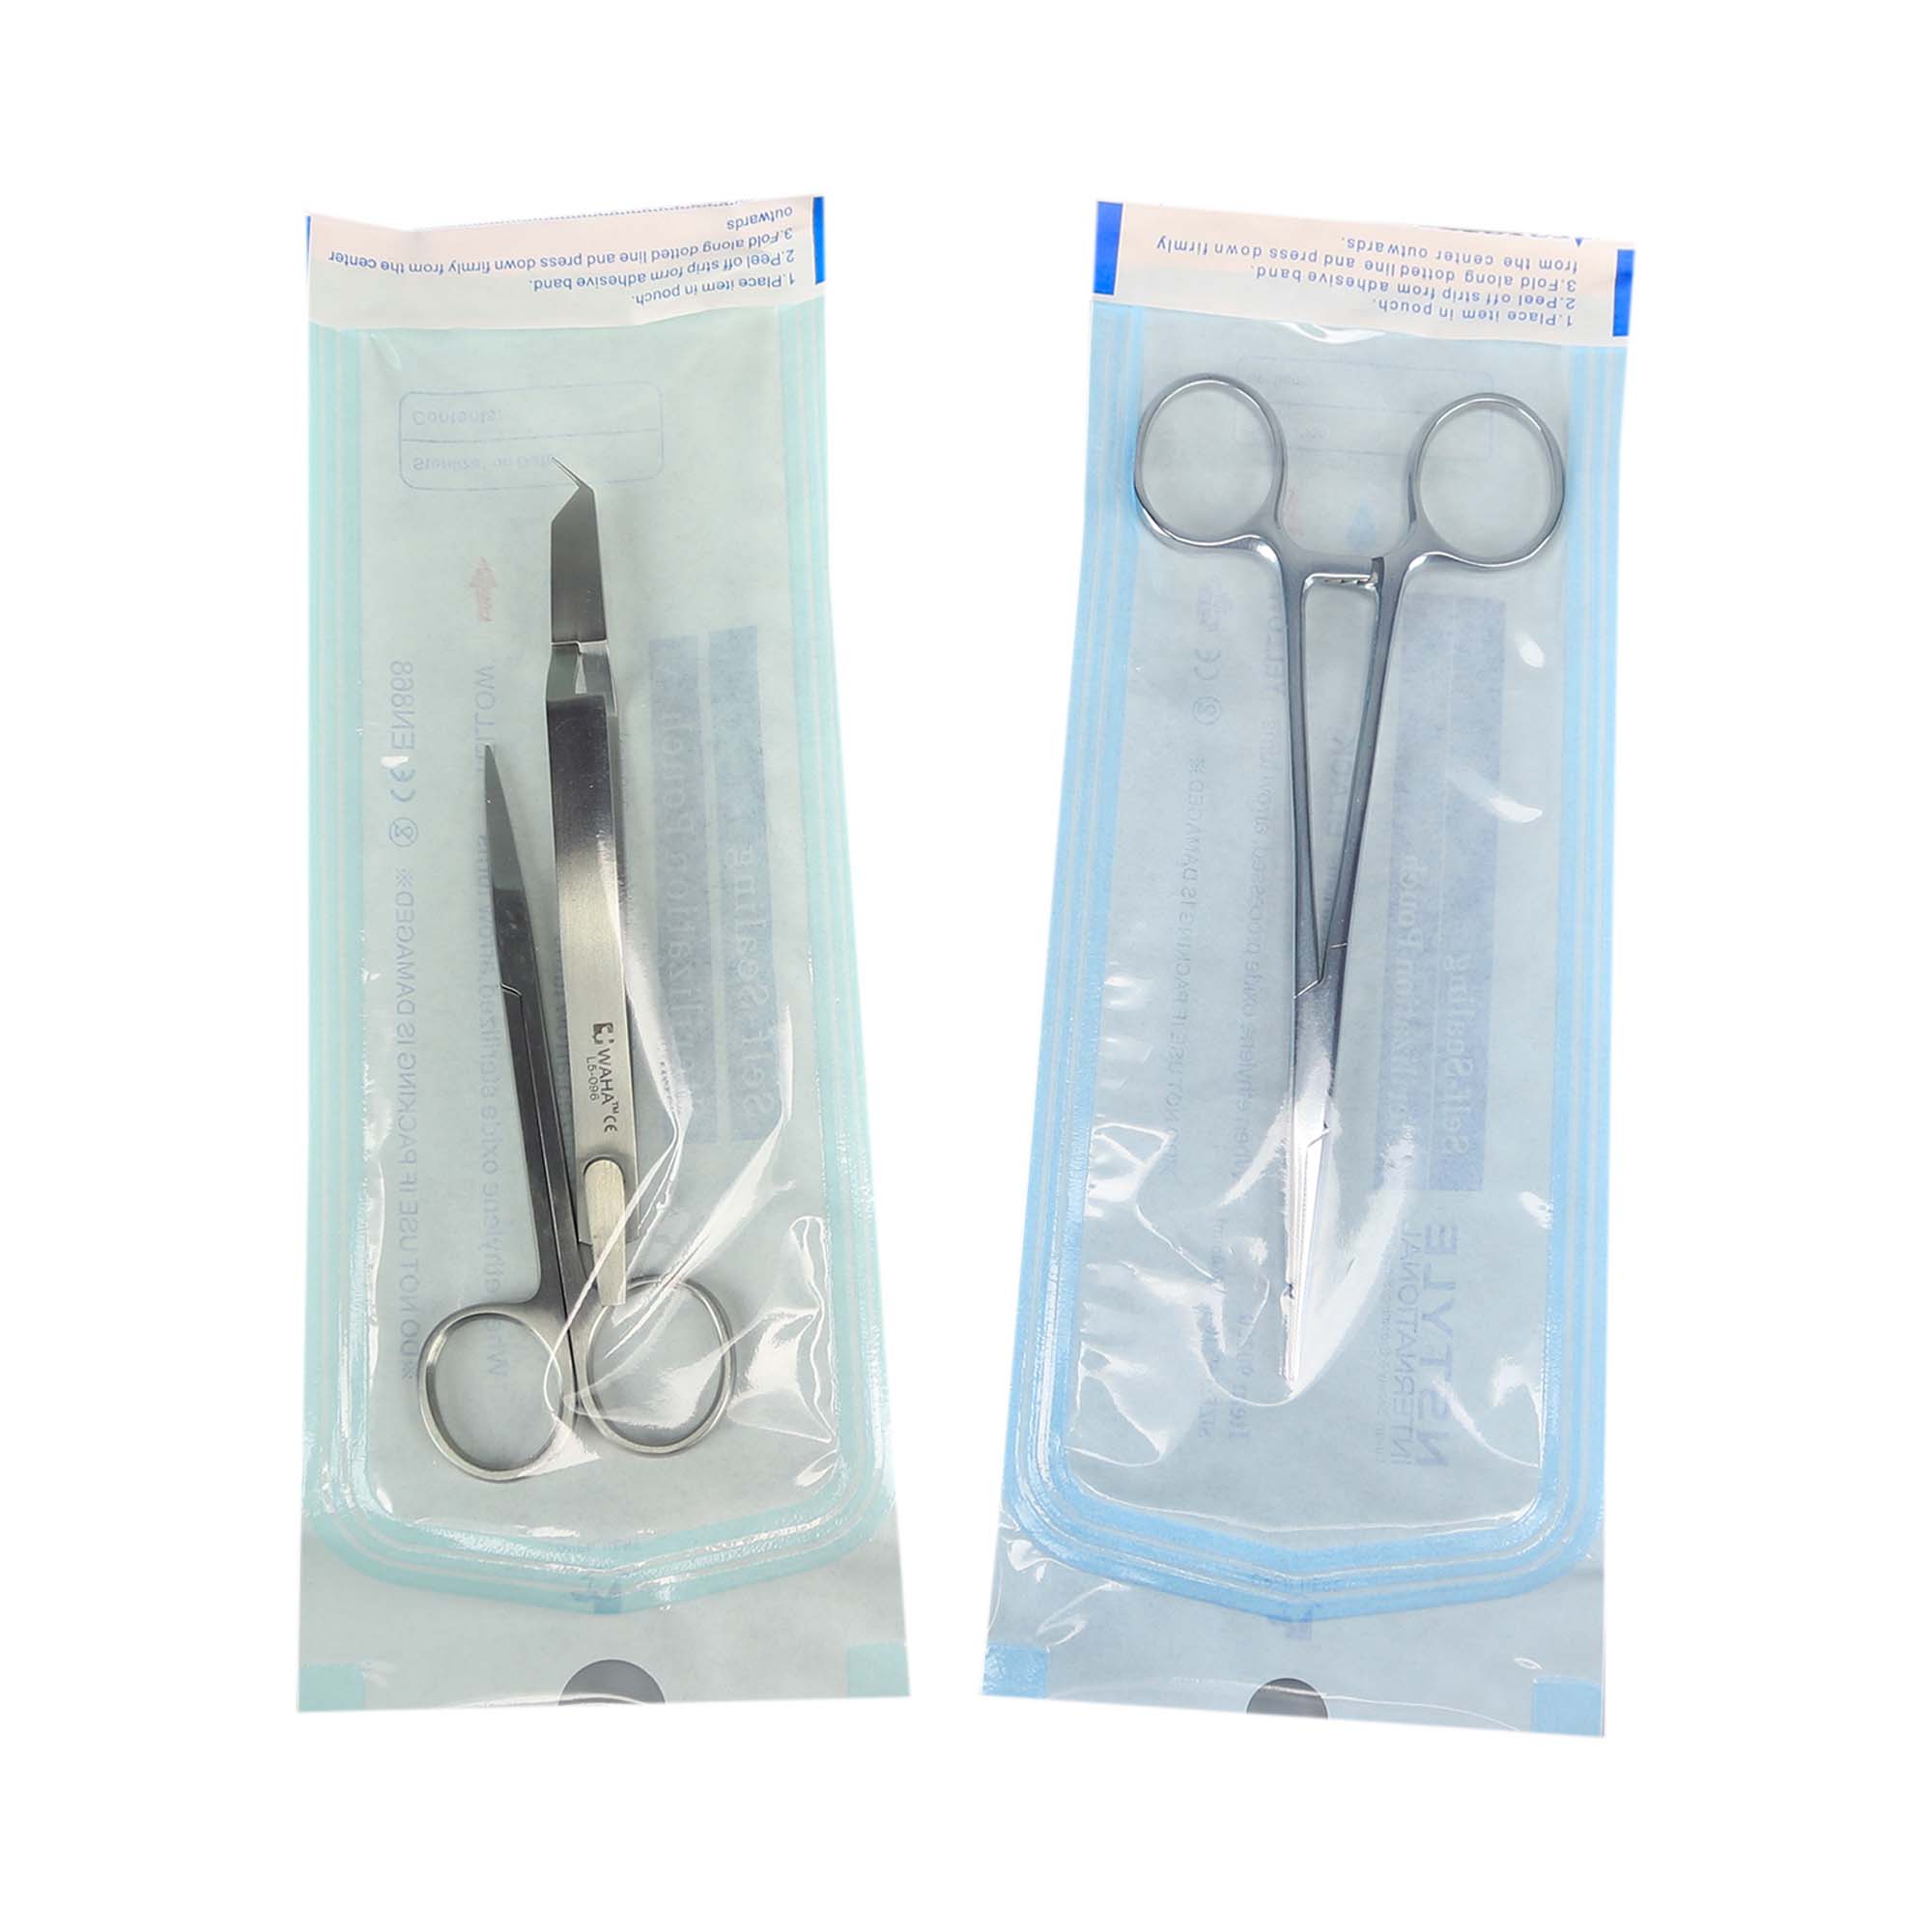 Busta sterilizzante per sacchetto di sterilizzazione piatto autosigillante termico medico dentale da 135 mm x 260 mm